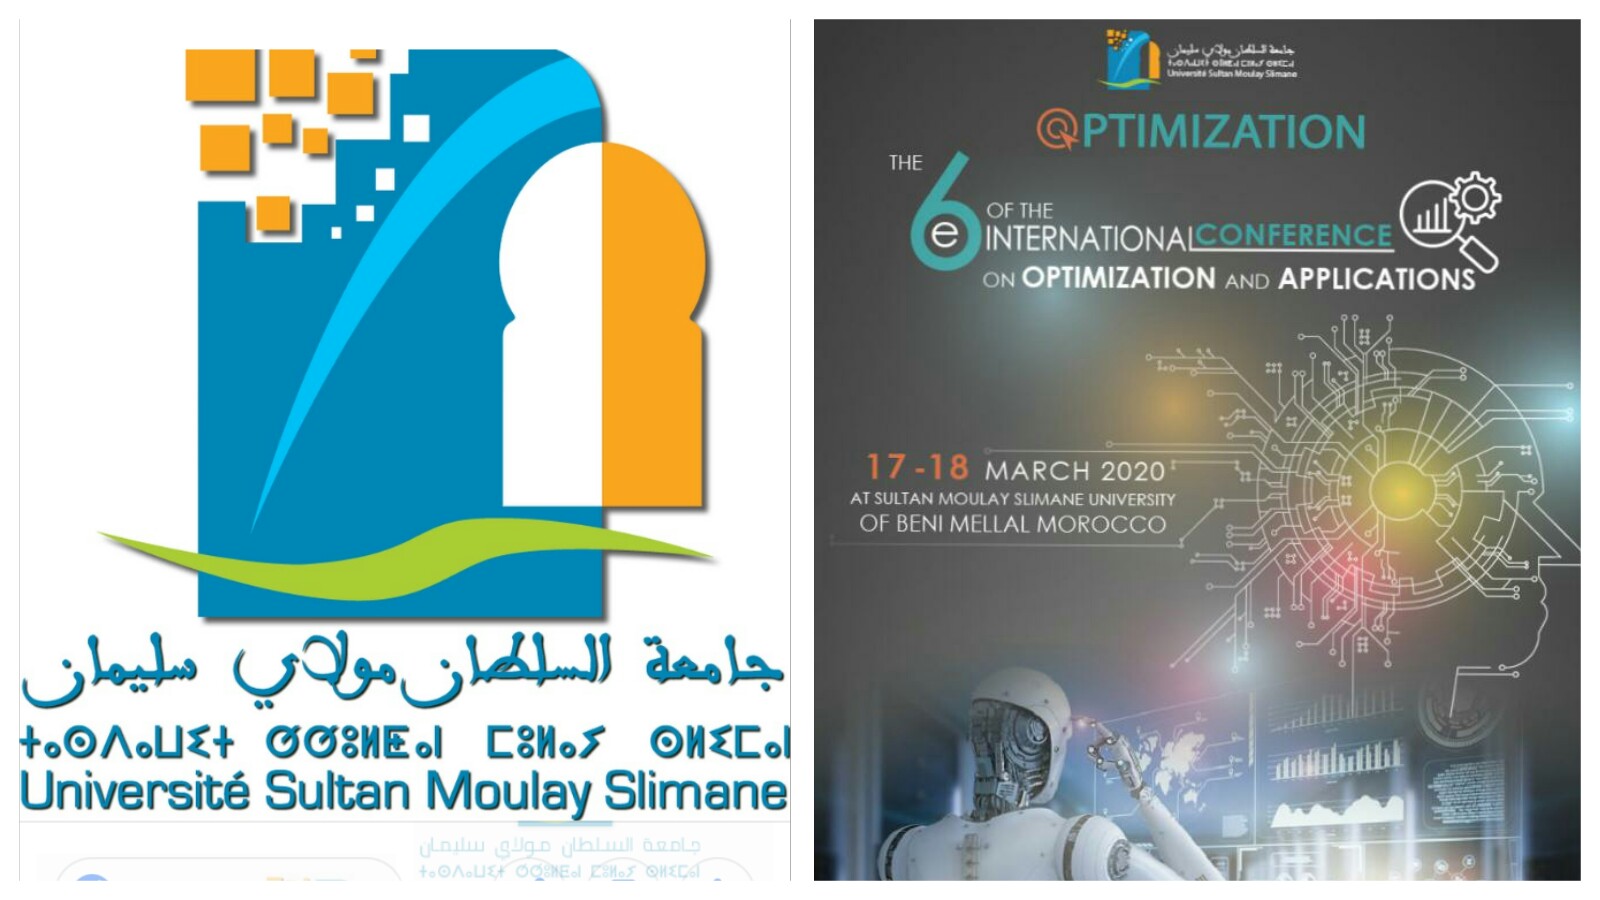 جامعة السلطان مولاي سليمان تنظم المؤتمر العالمي للمثللة وتطبيقاتها – النسخة السادسة وهذا اخر موعد للتسجيل 